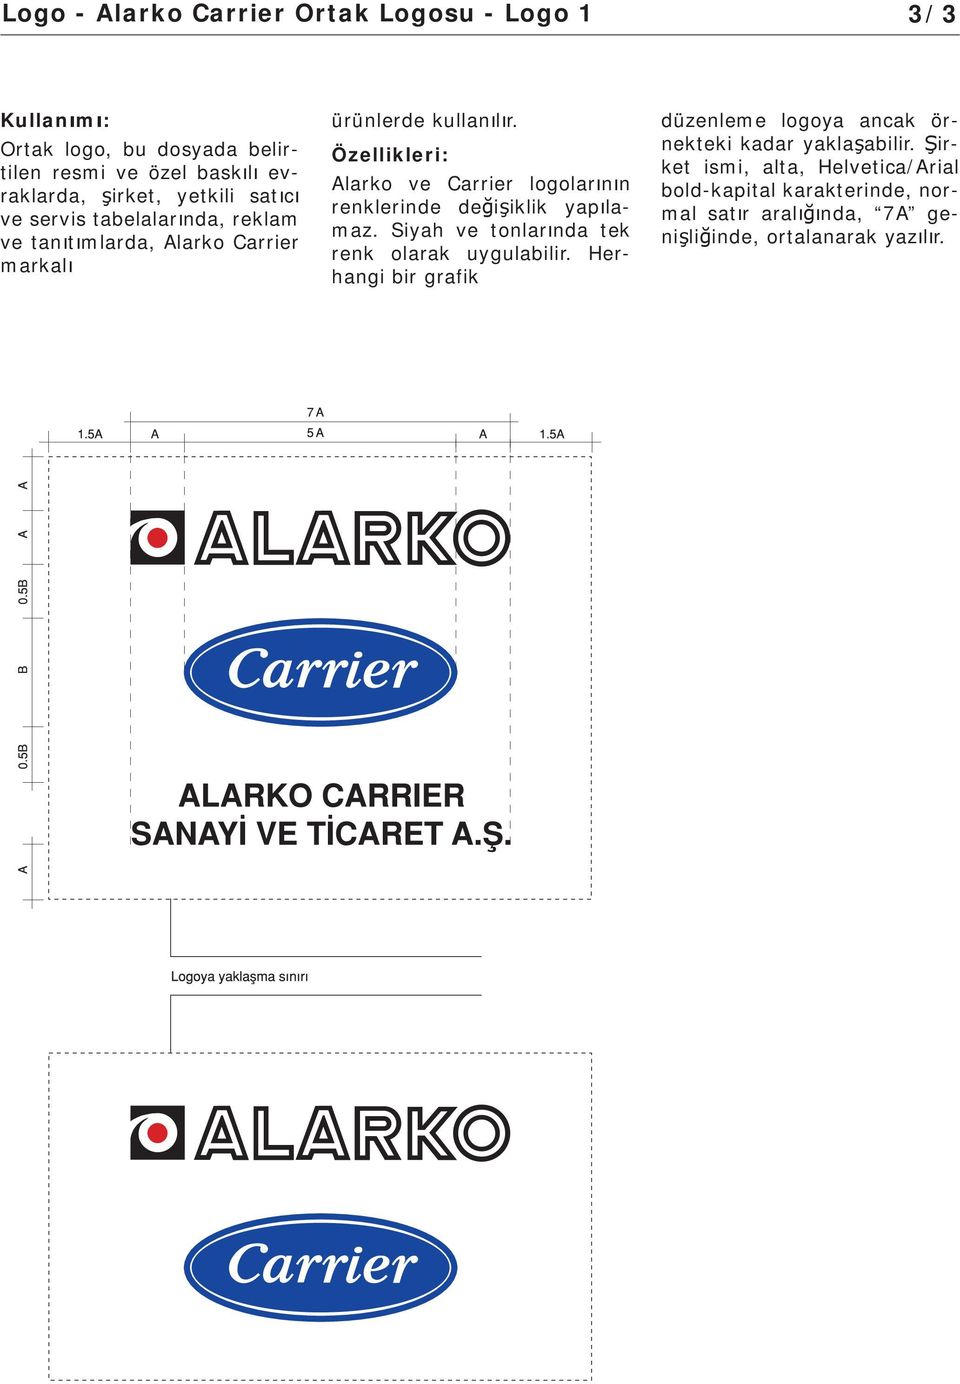 Alarko ve Carrier logolar n n renklerinde de i iklik yap lamaz. Siyah ve tonlar nda tek renk olarak uygulabilir.